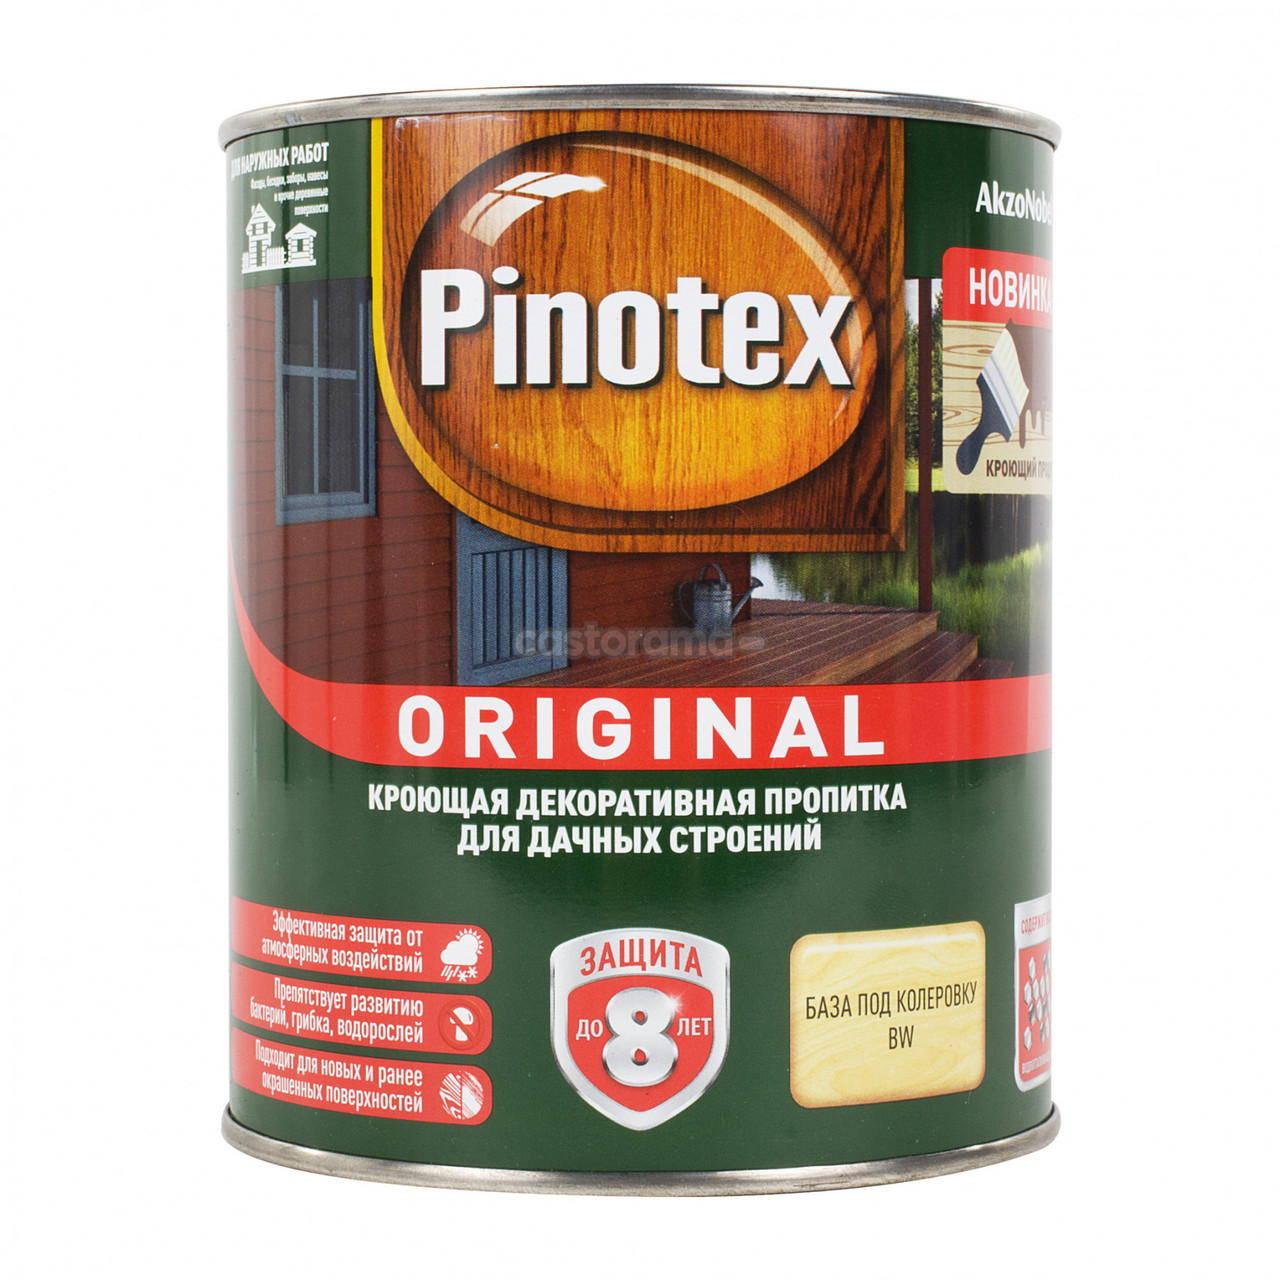 Пропитка Pinotex Original кроющая для деревянных поверхностей CLR, 2.5